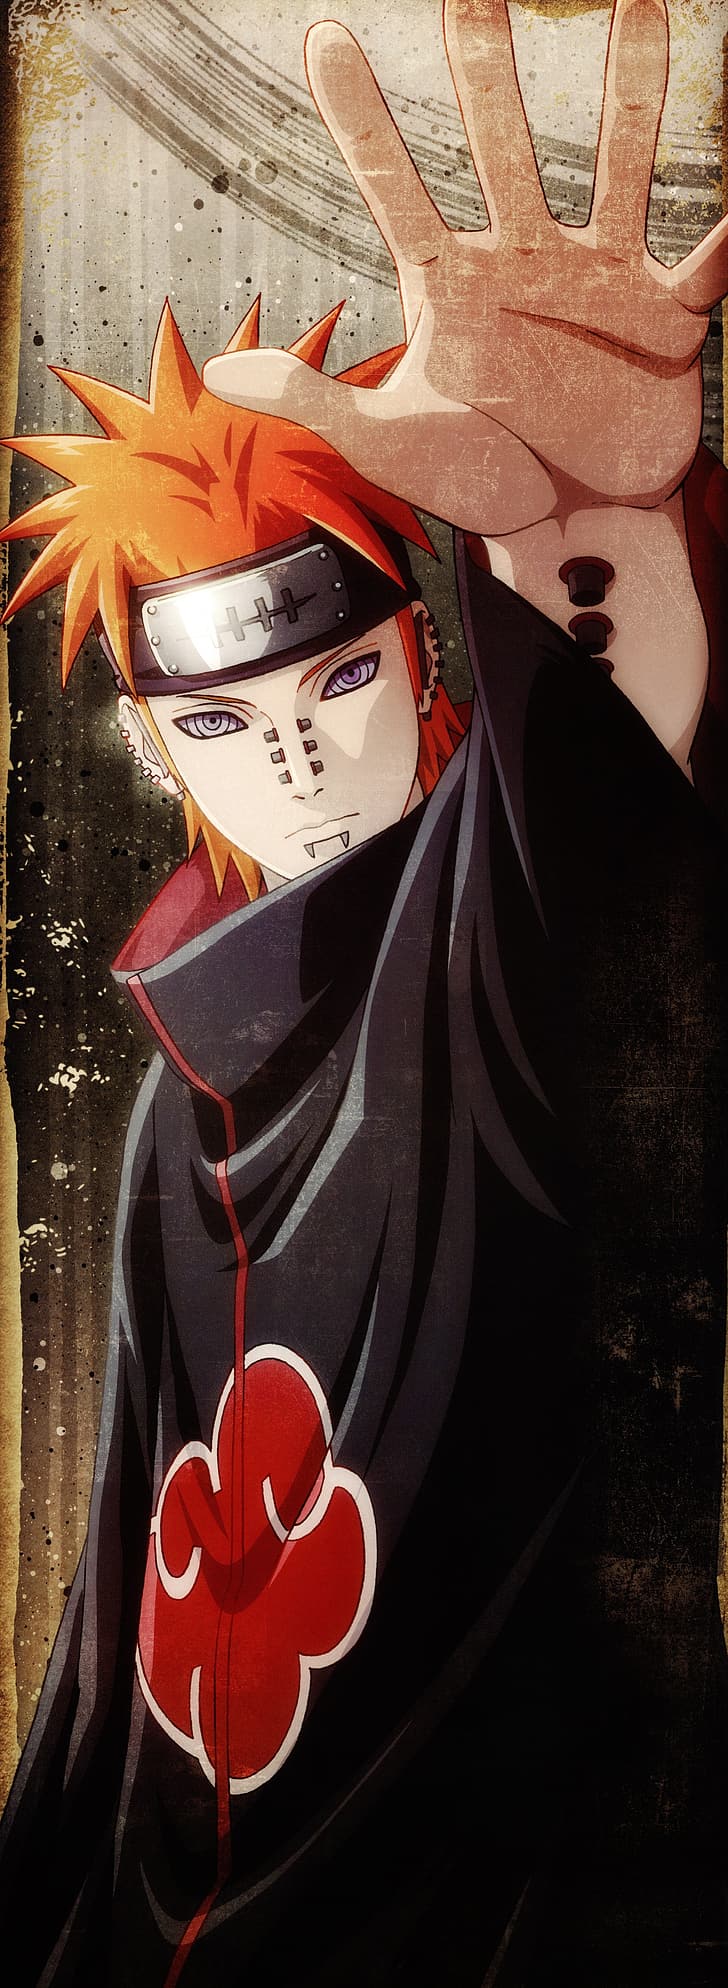 30x1800px Free Download Hd Wallpaper Naruto Anime Naruto Akatsuki Naruto Shippuuden Uzumaki Naruto Wallpaper Flare